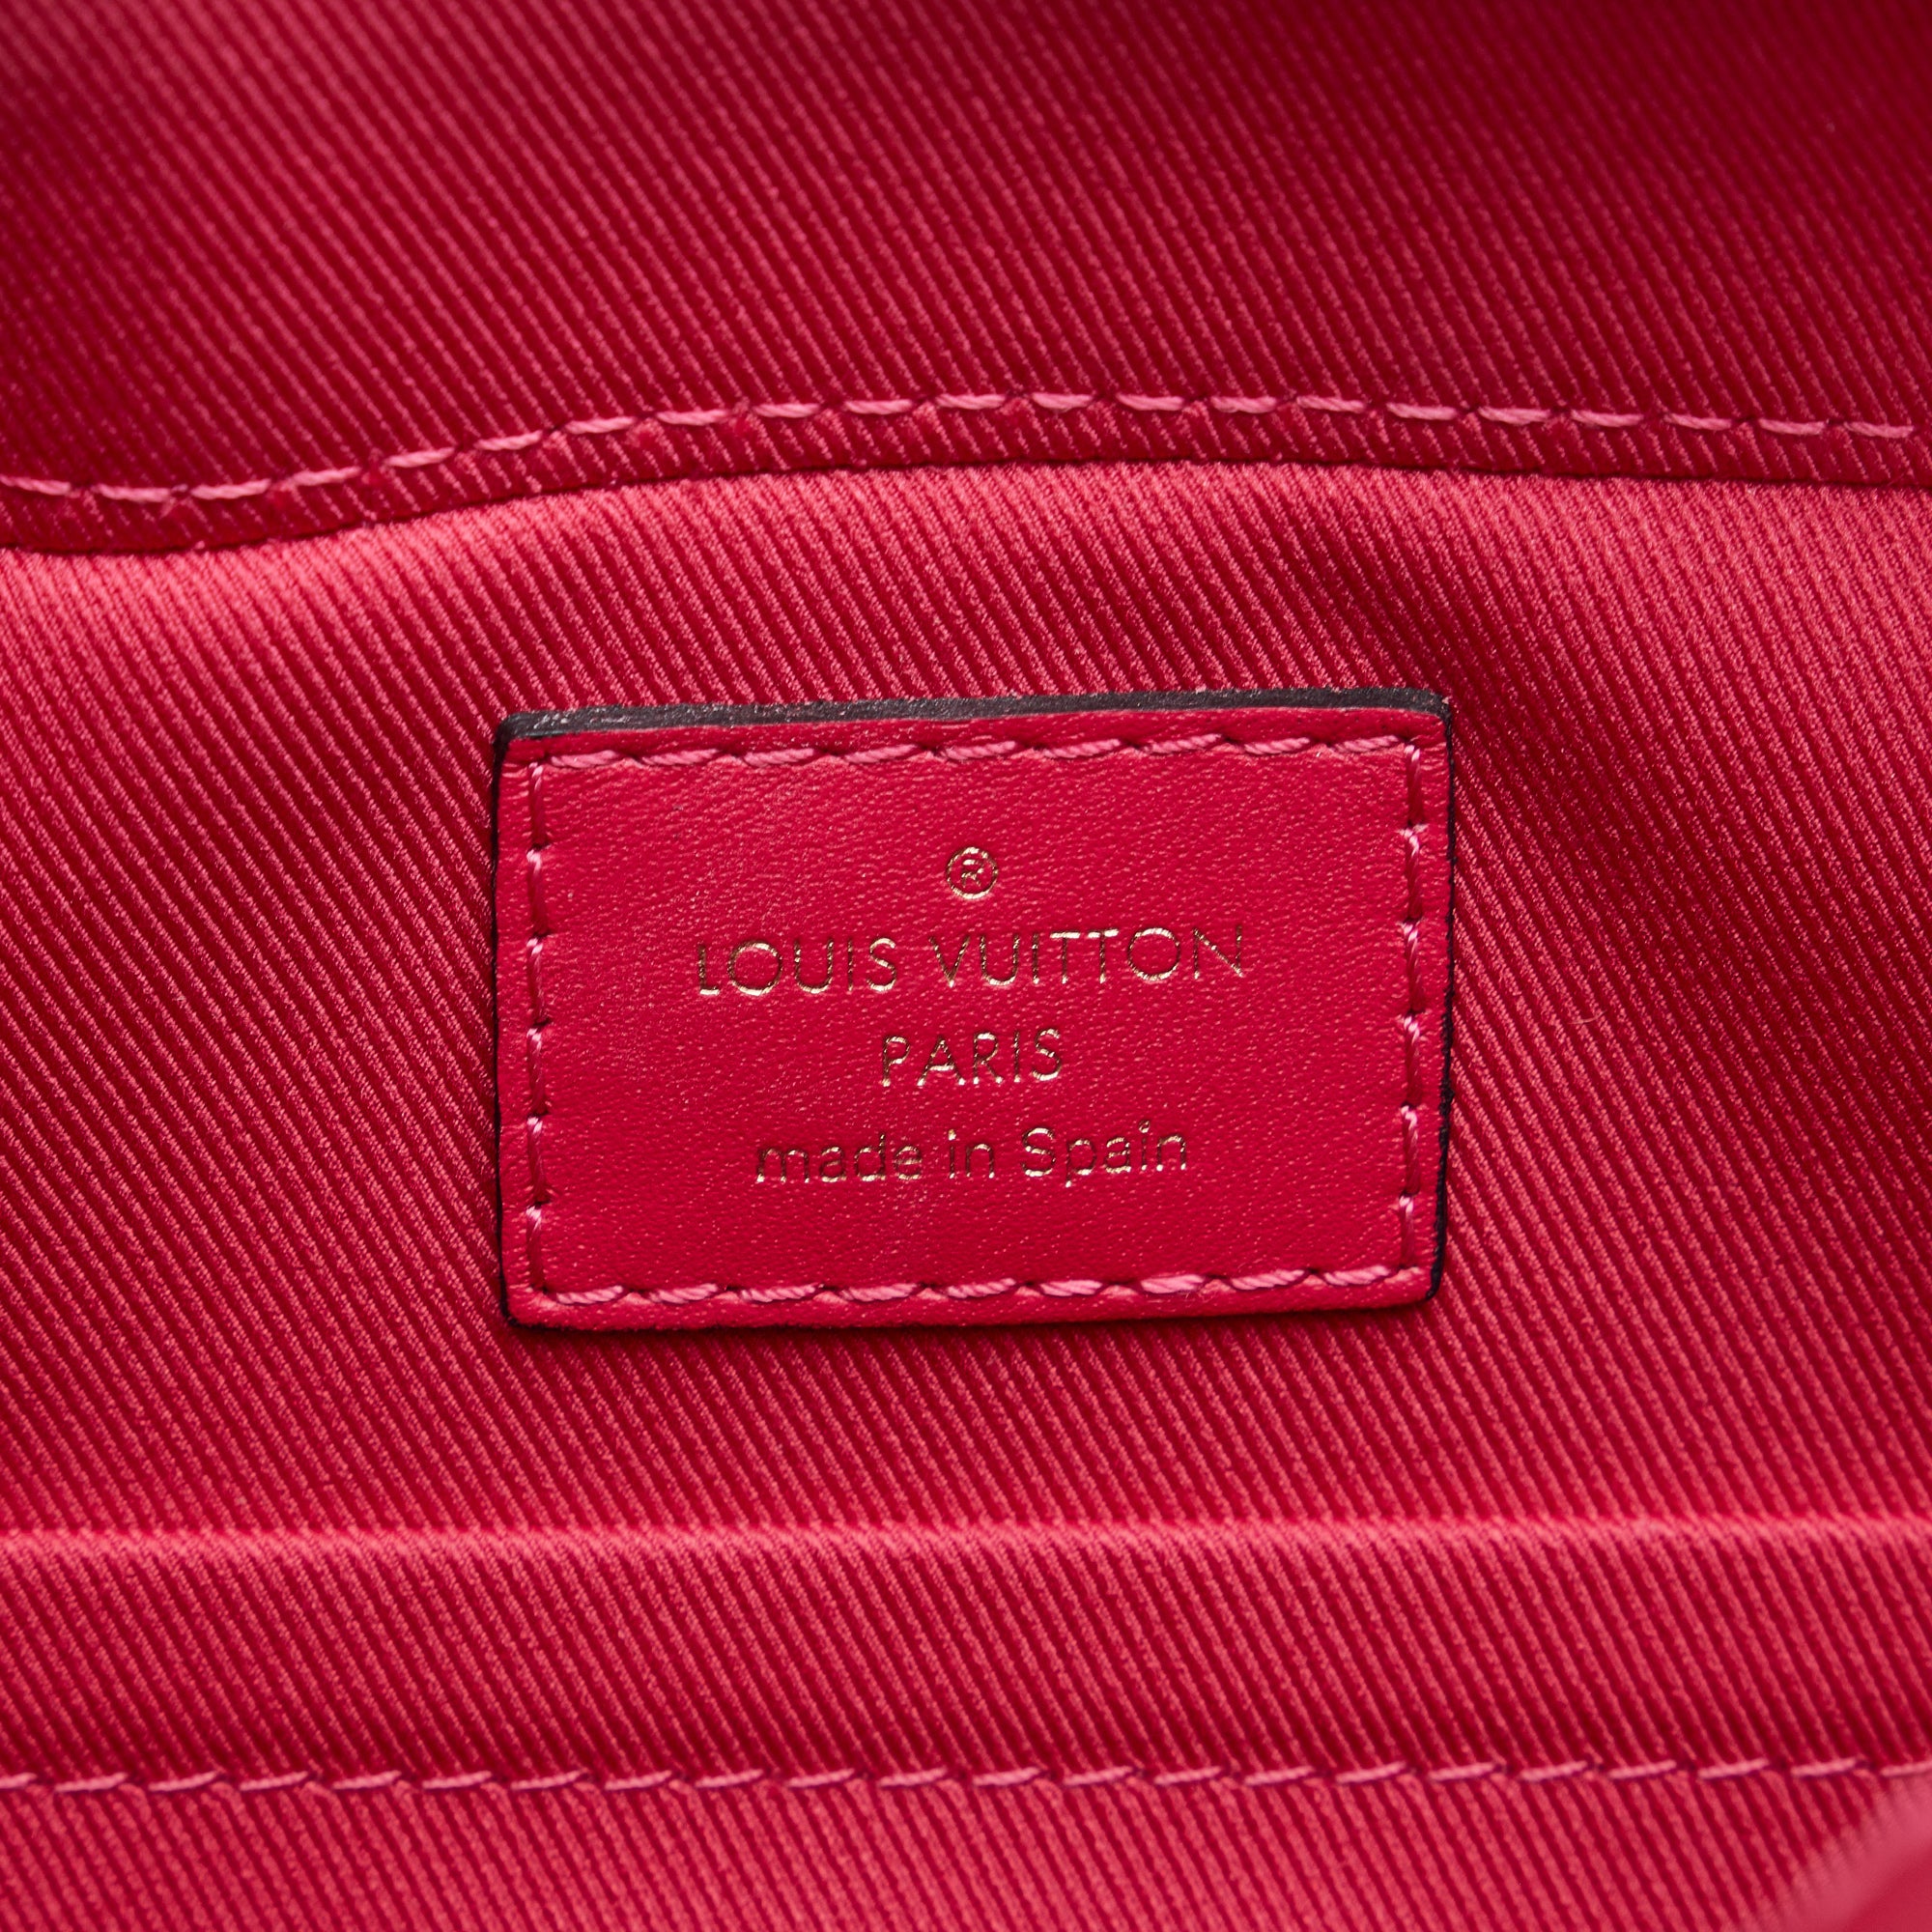 Louis Vuitton Red Leather & Monogram Canvas Saintonge QJBIGK5VRB027